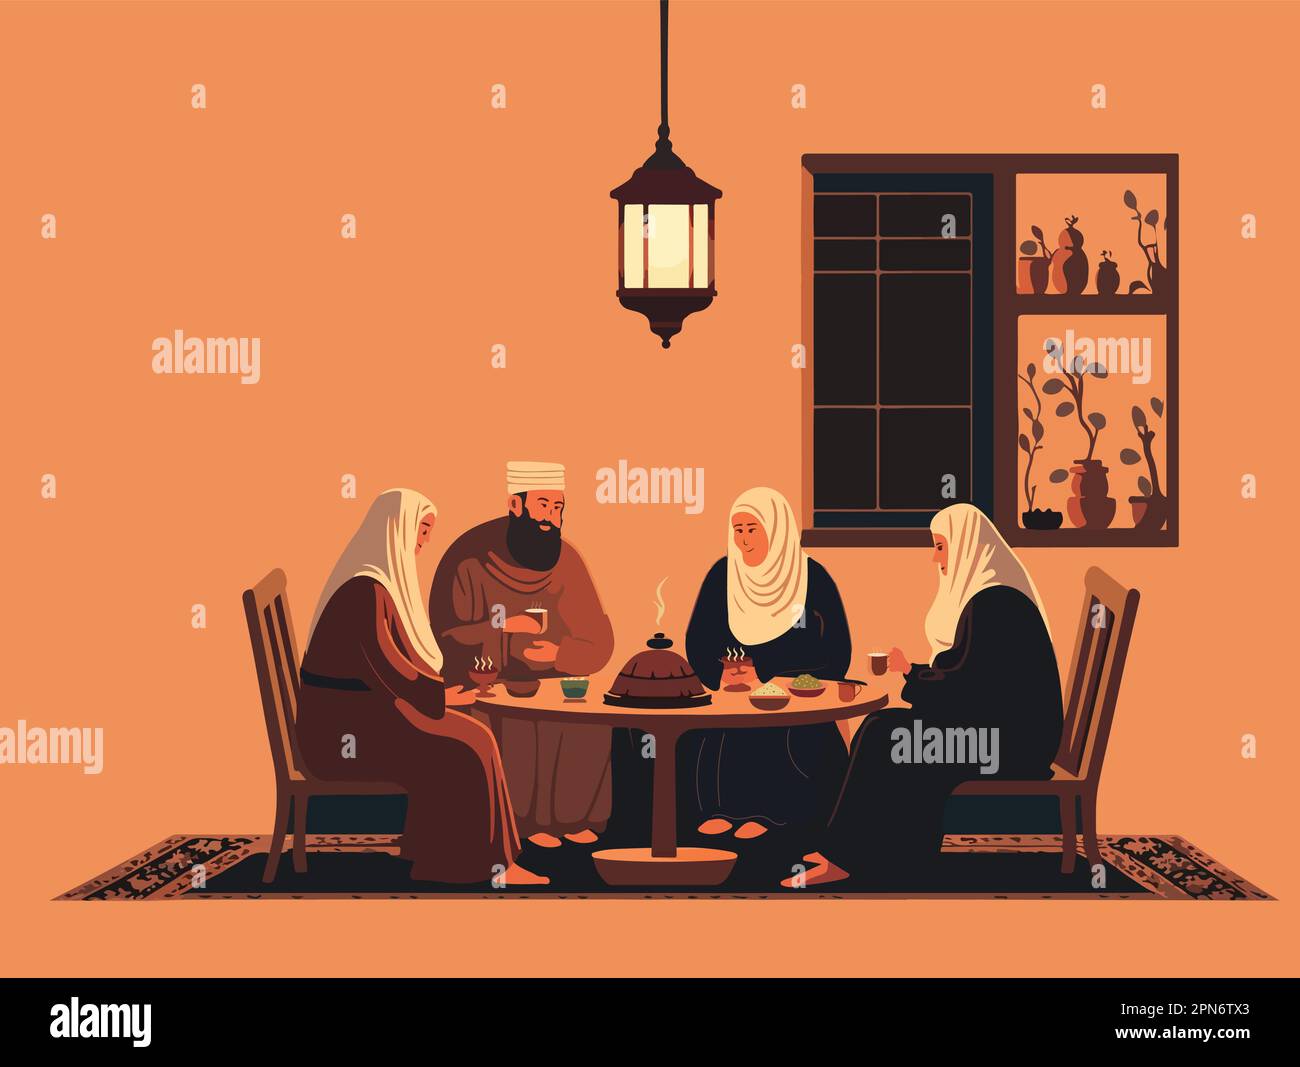 Illustration vectorielle des musulmans appréciant de délicieux repas à la table de salle à manger. Concept religieux islamique. Illustration de Vecteur